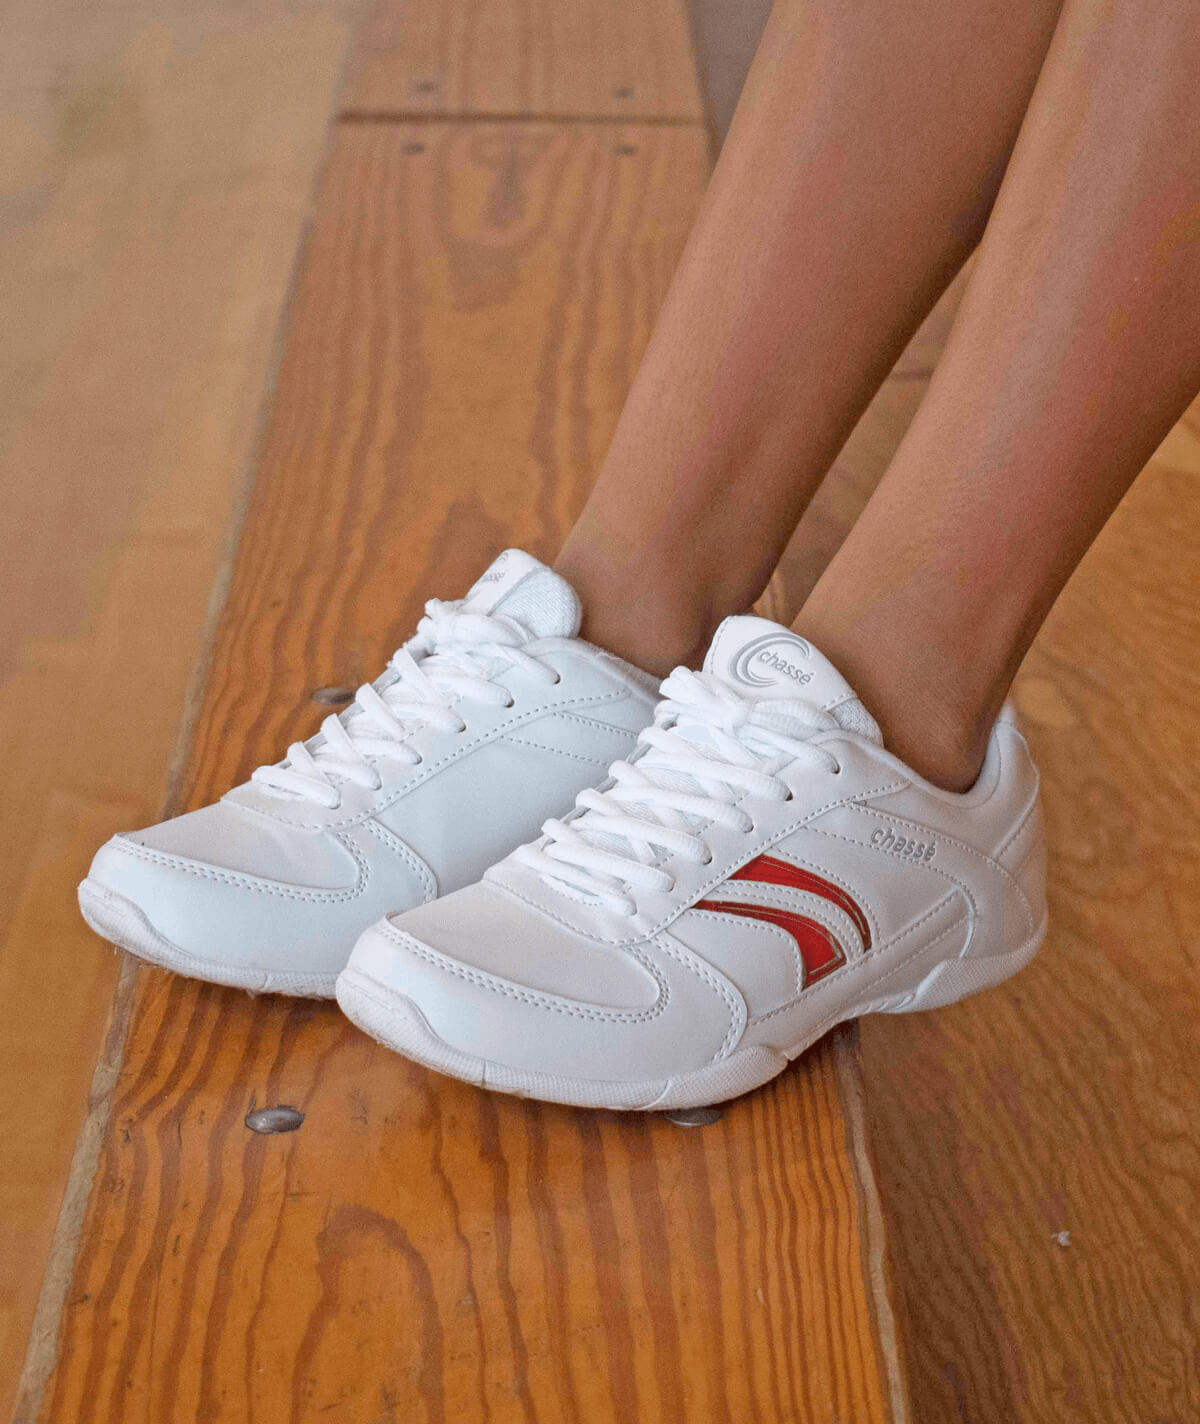 Chasse Cheer Zapatos Flip IV Blanco Talla 10 Nuevo Con Caja Y Color Cambiable Insertos 